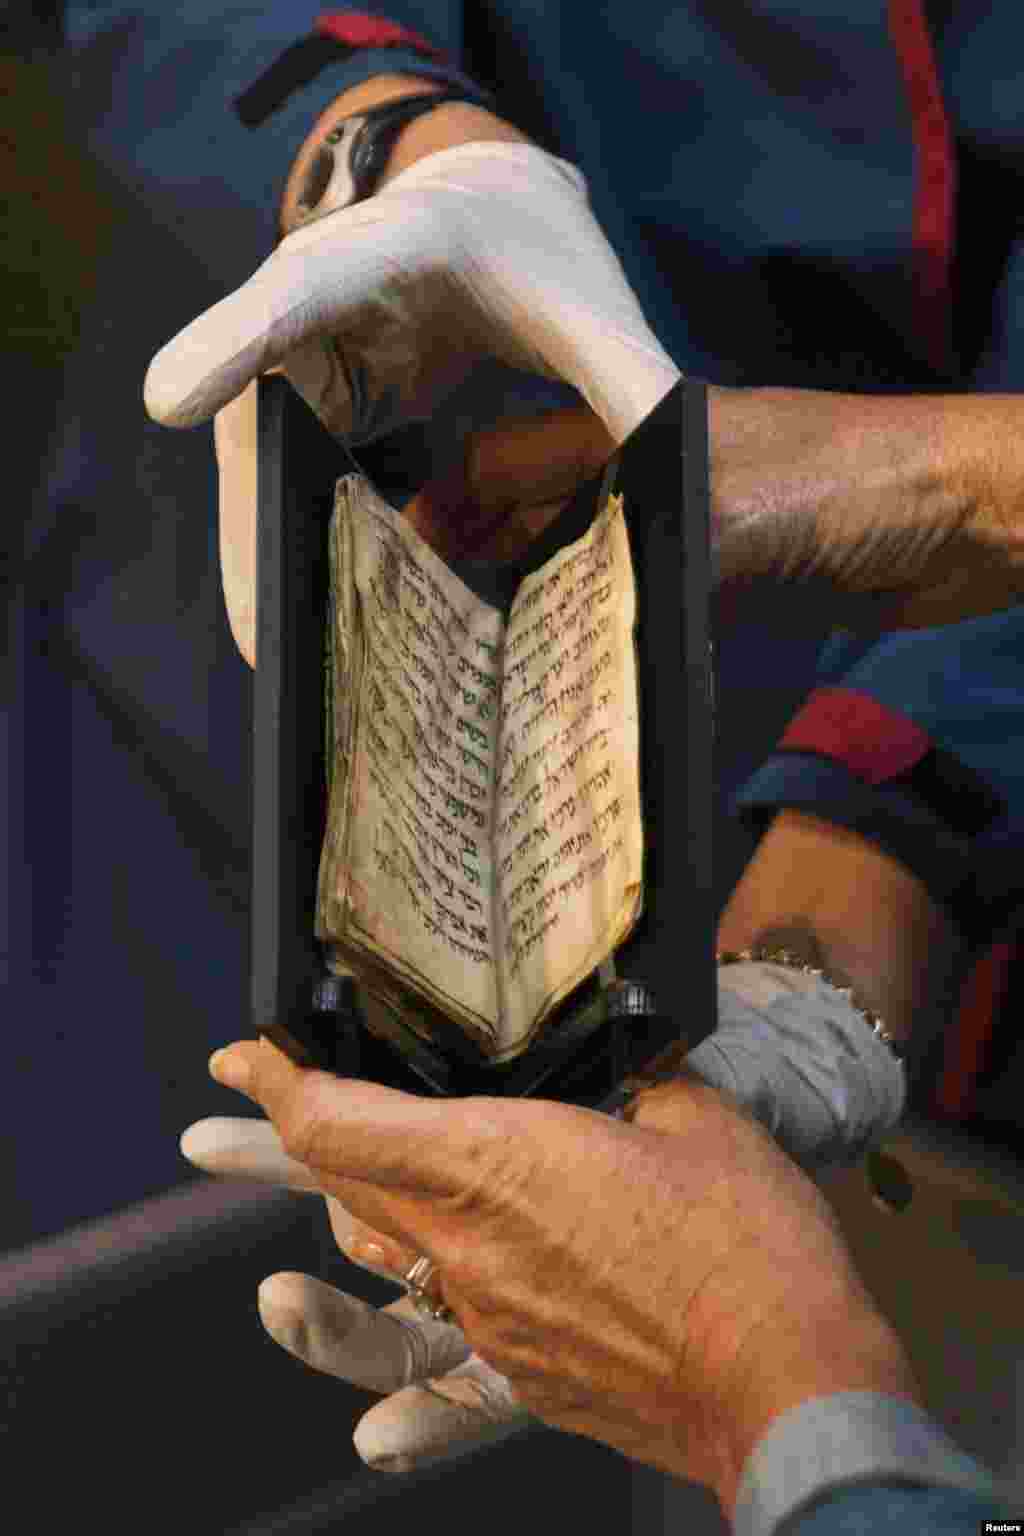 Giám đốc viện bảo tàng về Thánh kinh&nbsp; Bible Lands Museum cầm một cuốn sách cầu nguyện cổ xưa của người Do Thái và đặt lên bàn trưng bày tại bảo tàng ở Jerusalem. Có niên đại khoảng 1.200 năm, Siddur là cuốn sách cầu nguyện cổ xưa nhất của người Do Thái từng được biết có tồn tại. Có nguồn gốc ở Trung Đông, nó bao gồm khoảng 50 trang được viết bằng tiếng Hebrew. 